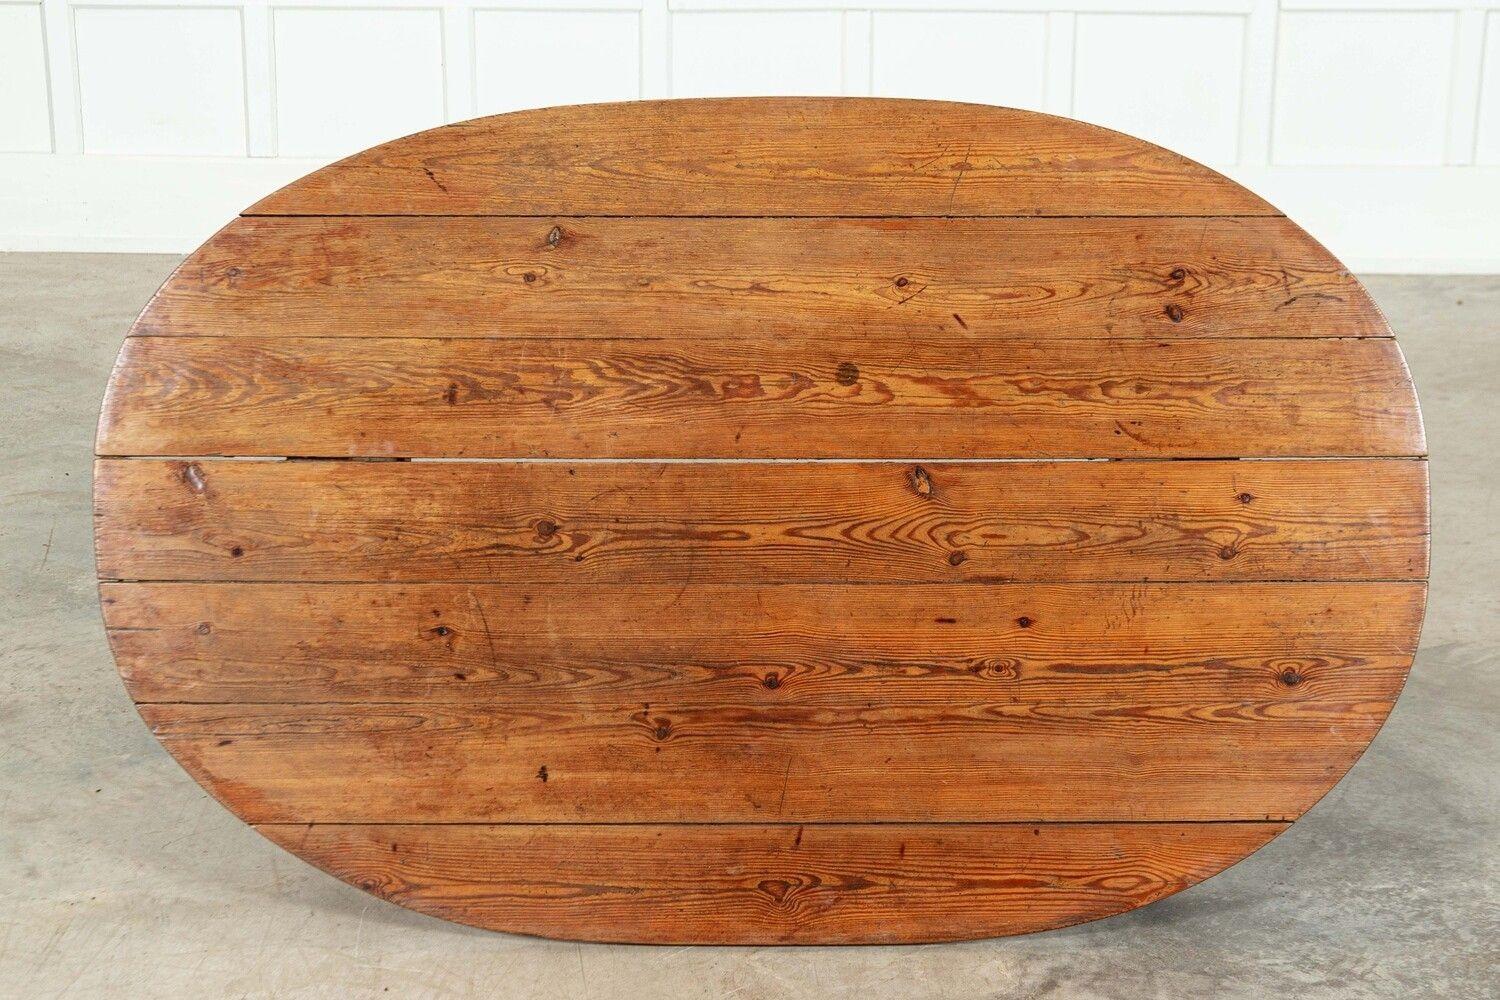 vers 1900
Table de réfectoire ovale en pin anglais
sku 1793
W148 x D93 x H73 cm
Poids 13 kg